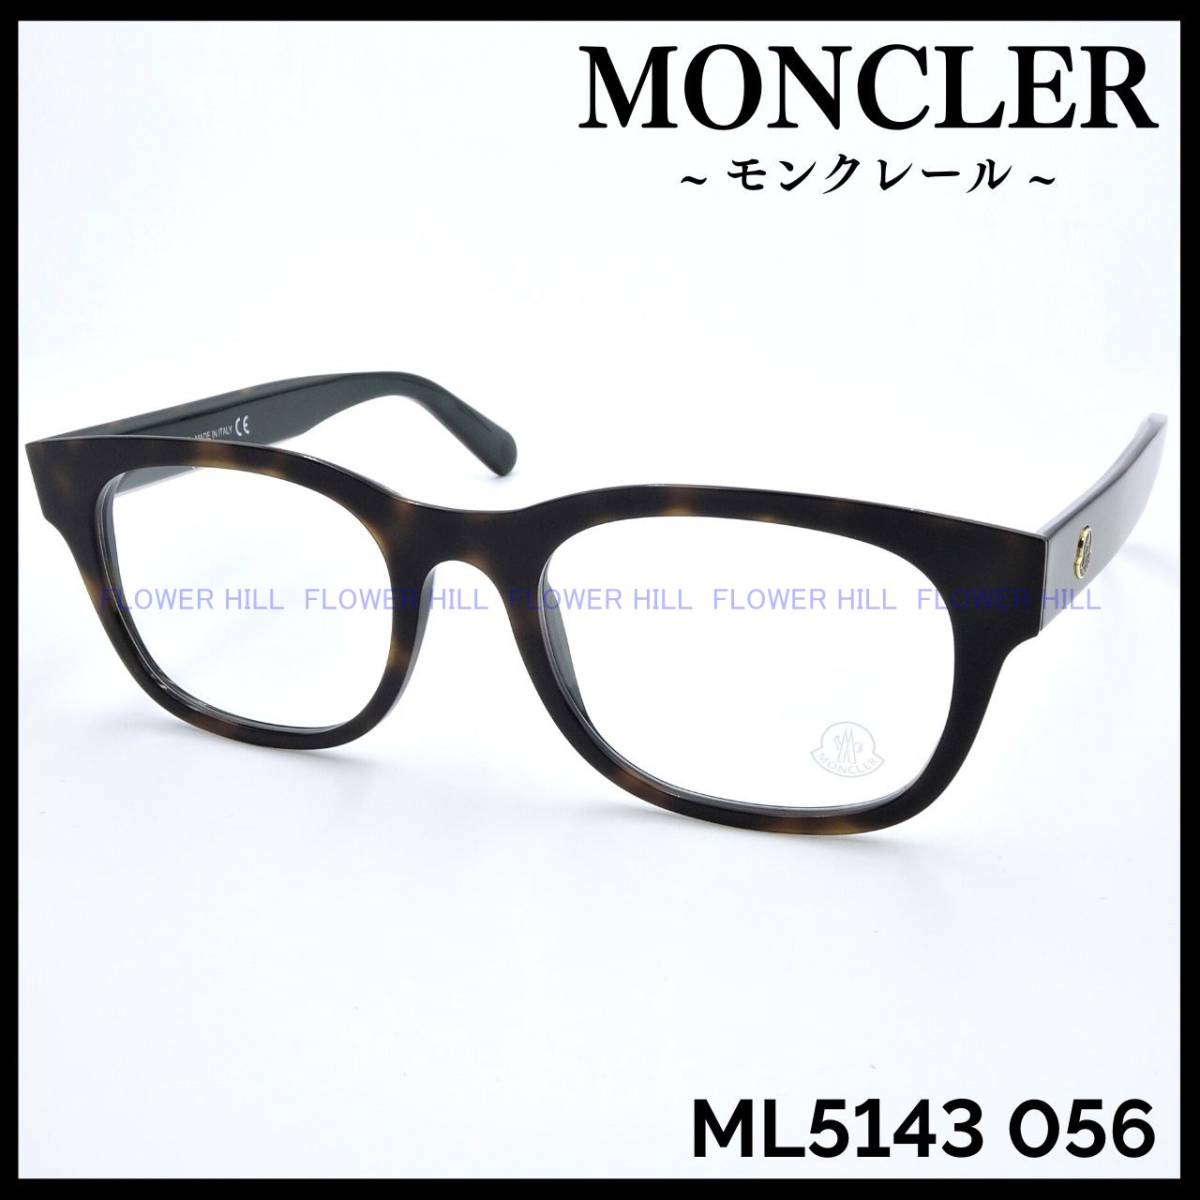 【新品・送料無料】モンクレール MONCLER ML5143 056 メガネ フレーム ハバナ/ブラック イタリア製 メンズ レディース